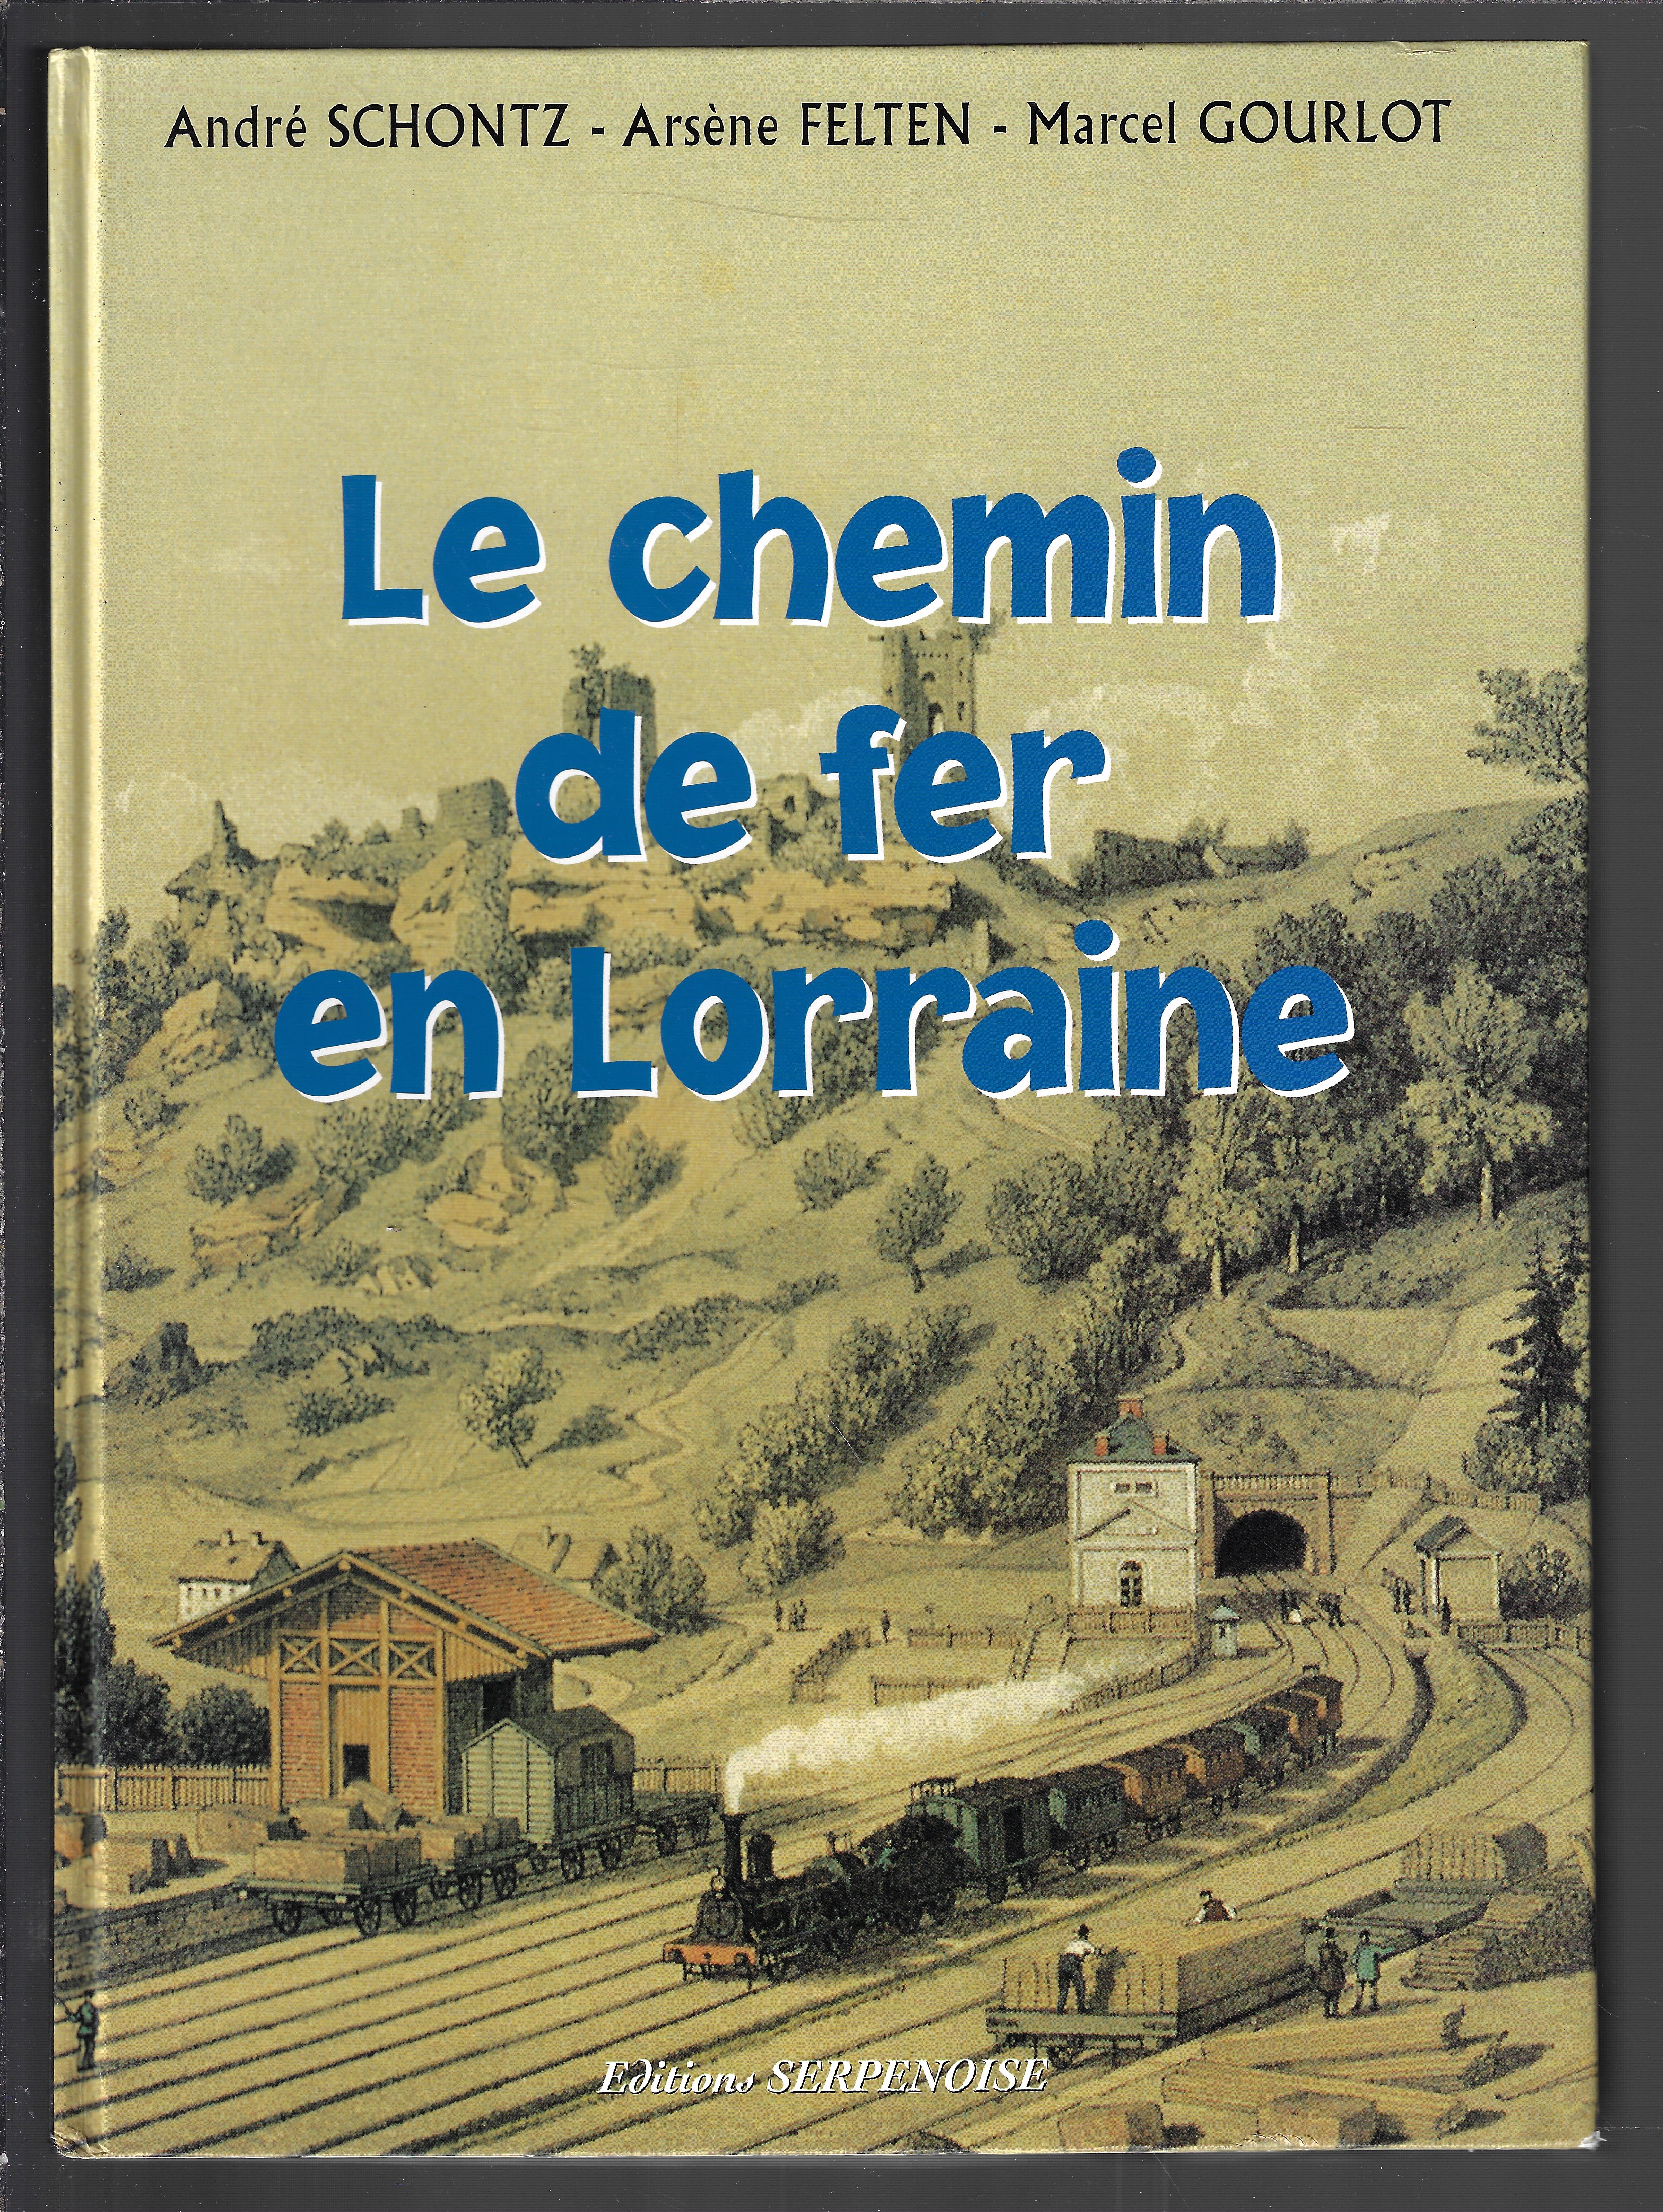 LE CHEMIN DE FER EN LORRAINE (French Edition) - André Schontz, Arsene Felten, Marcel Gourlot